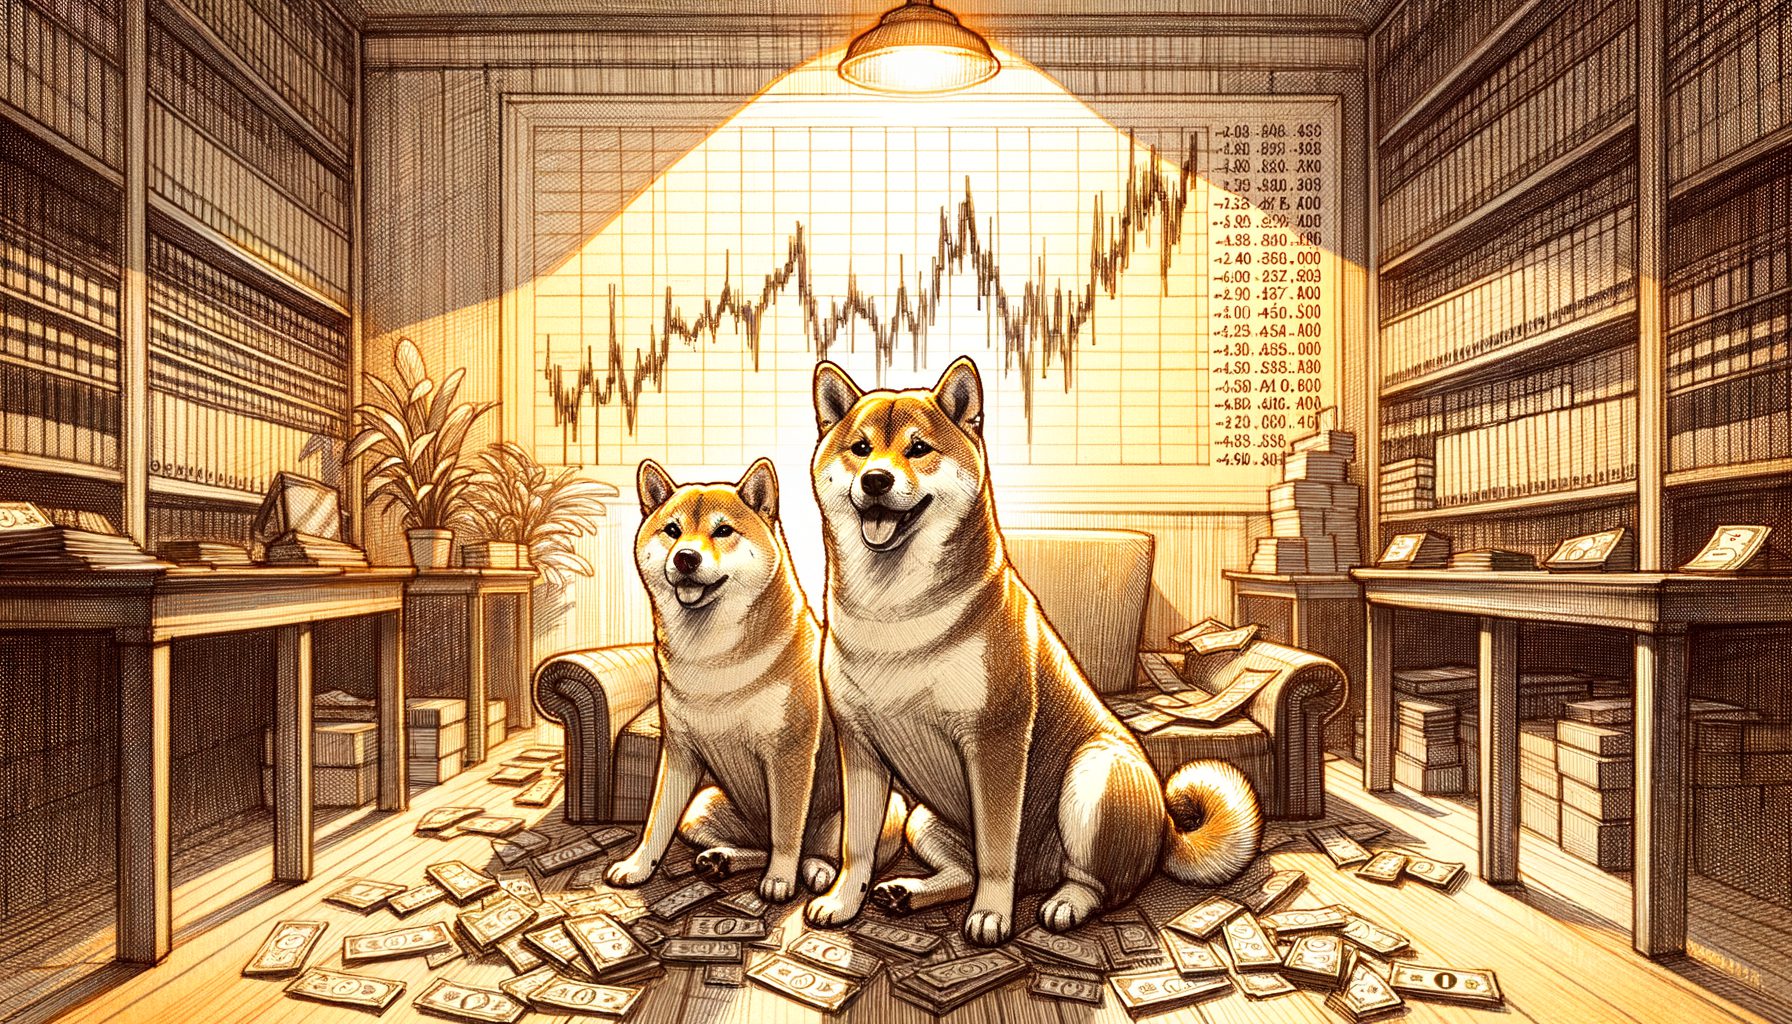 پیش بینی قیمت شیبا اینو (SHIB) و Dogecoin (DOGE) در این هفته